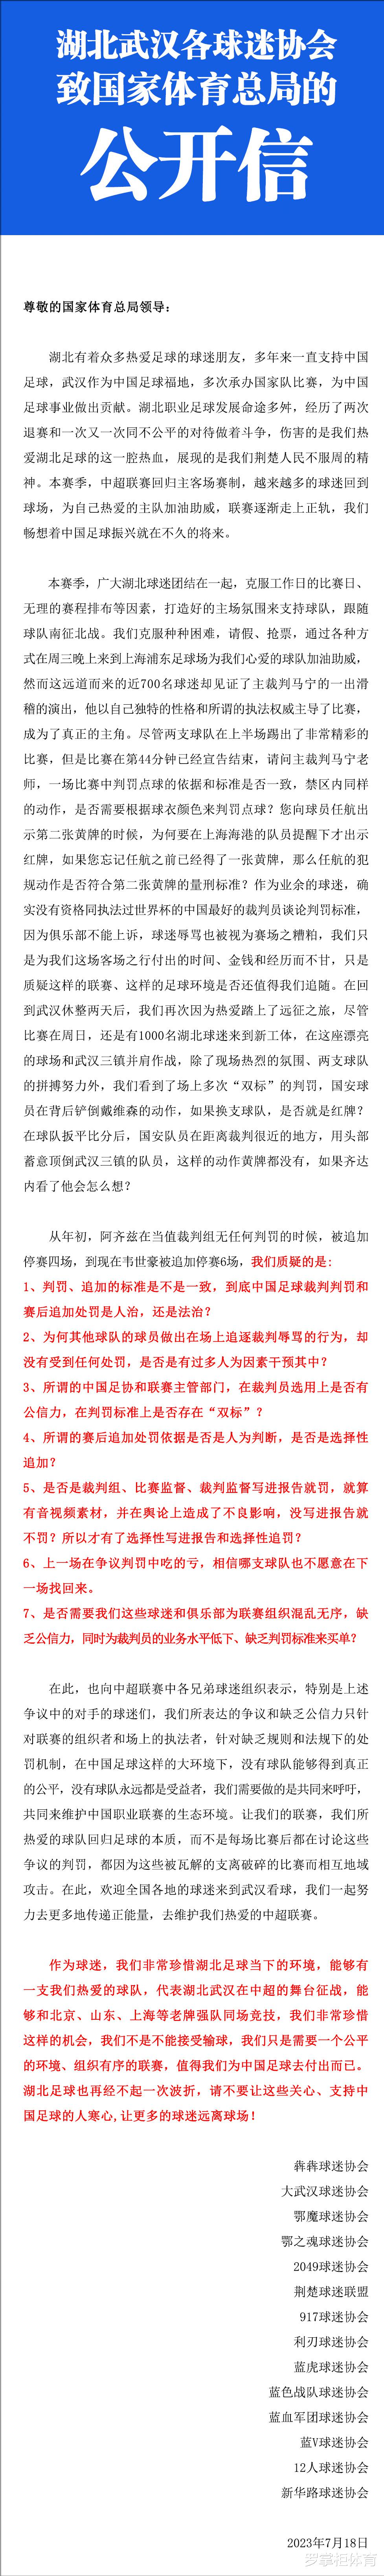 武汉三镇遭遇重大双标处罚，足协丧失公信力，足球媒体人摇头无奈